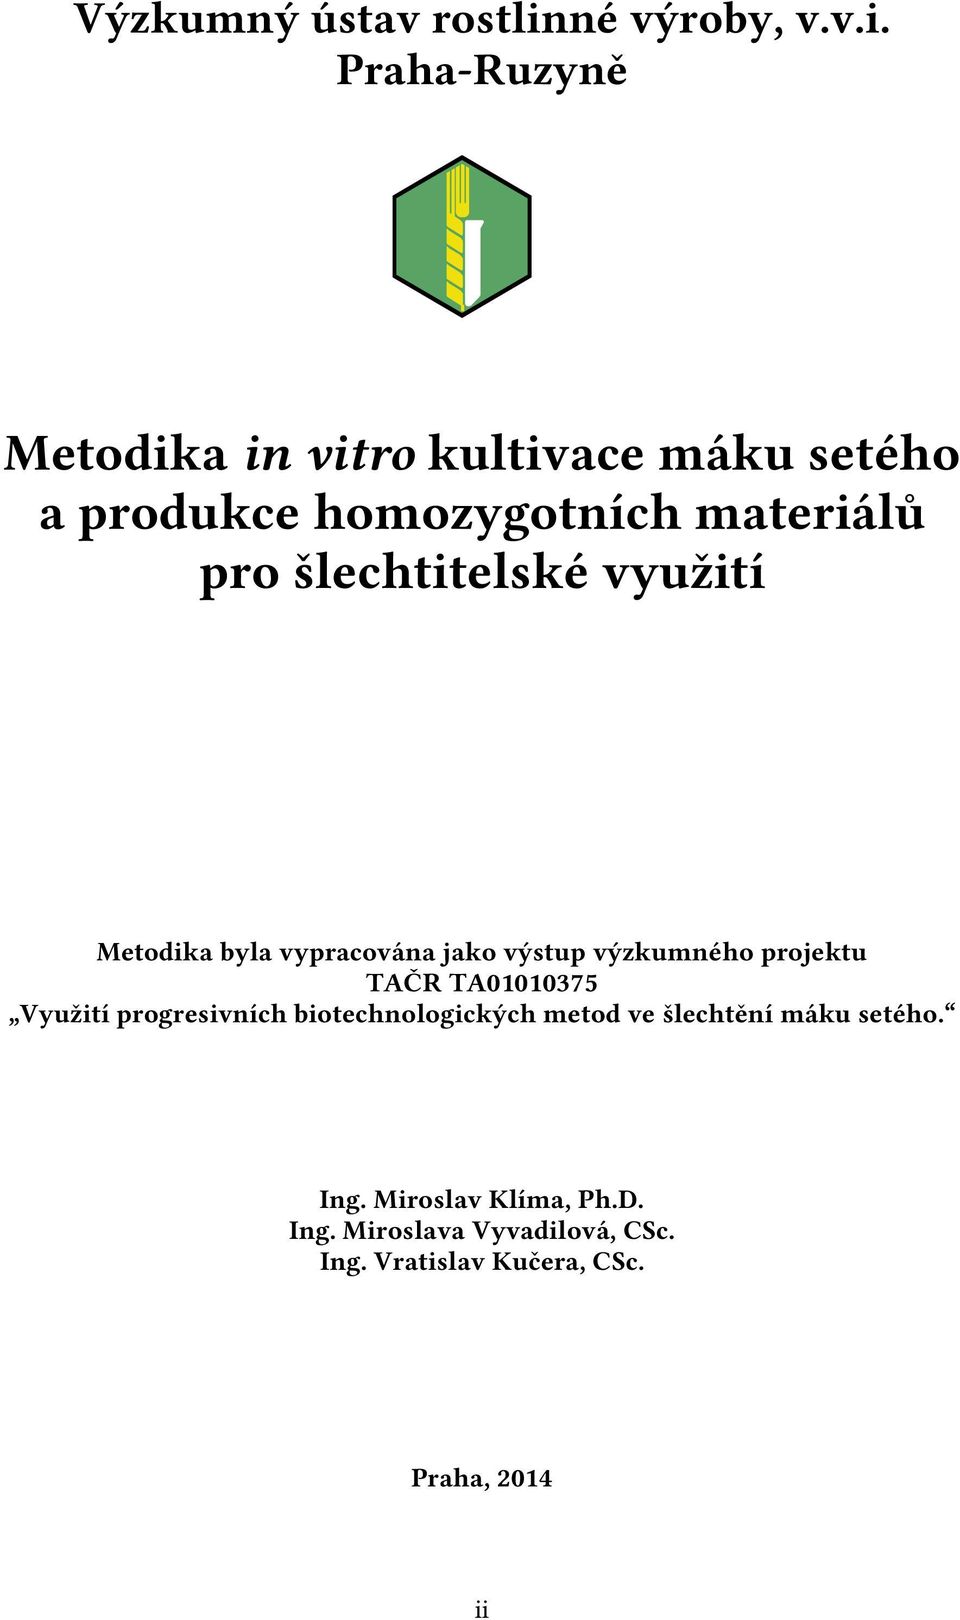 Praha-Ruzyně Metodika in vitro kultivace máku setého a produkce homozygotních materiálů pro